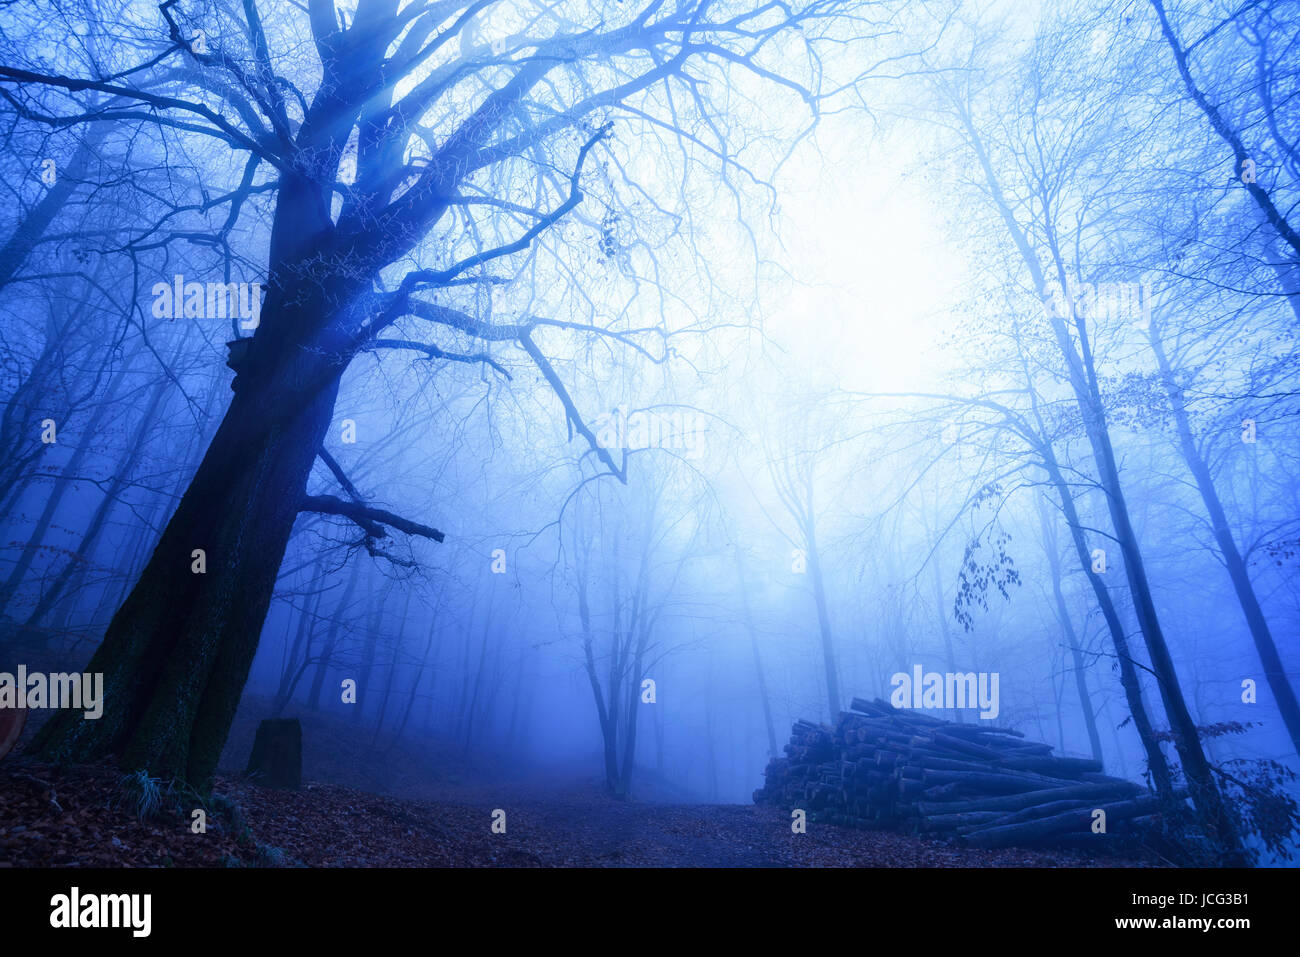 Blaue Nebelstimmung in einem kahlen Buchenwald bei Dämmerung Stock Photo